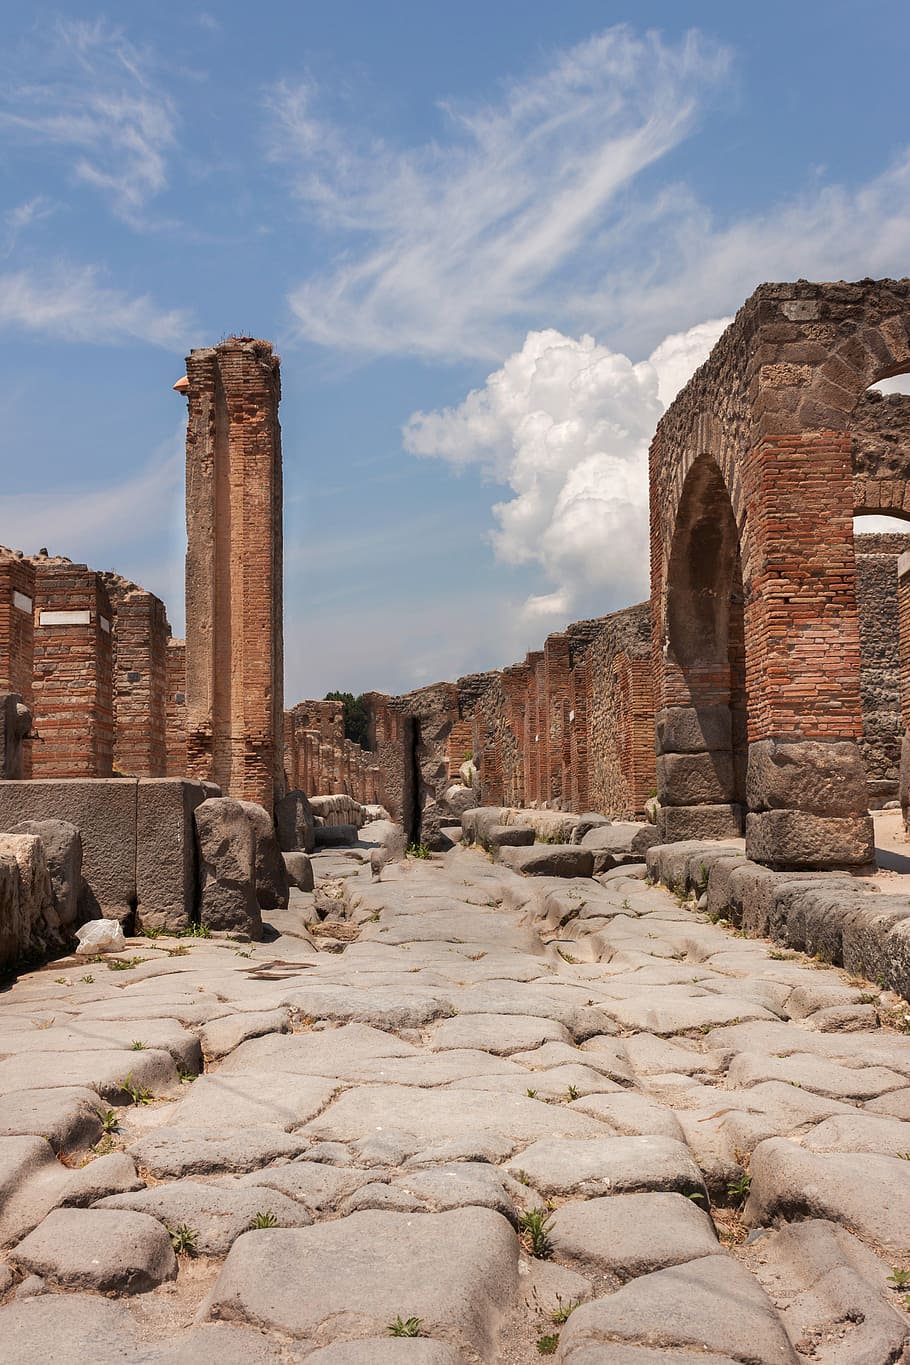 Pompei, Archeology, Italy, Naples, volcano, vesuvius, sky, work, relic, history